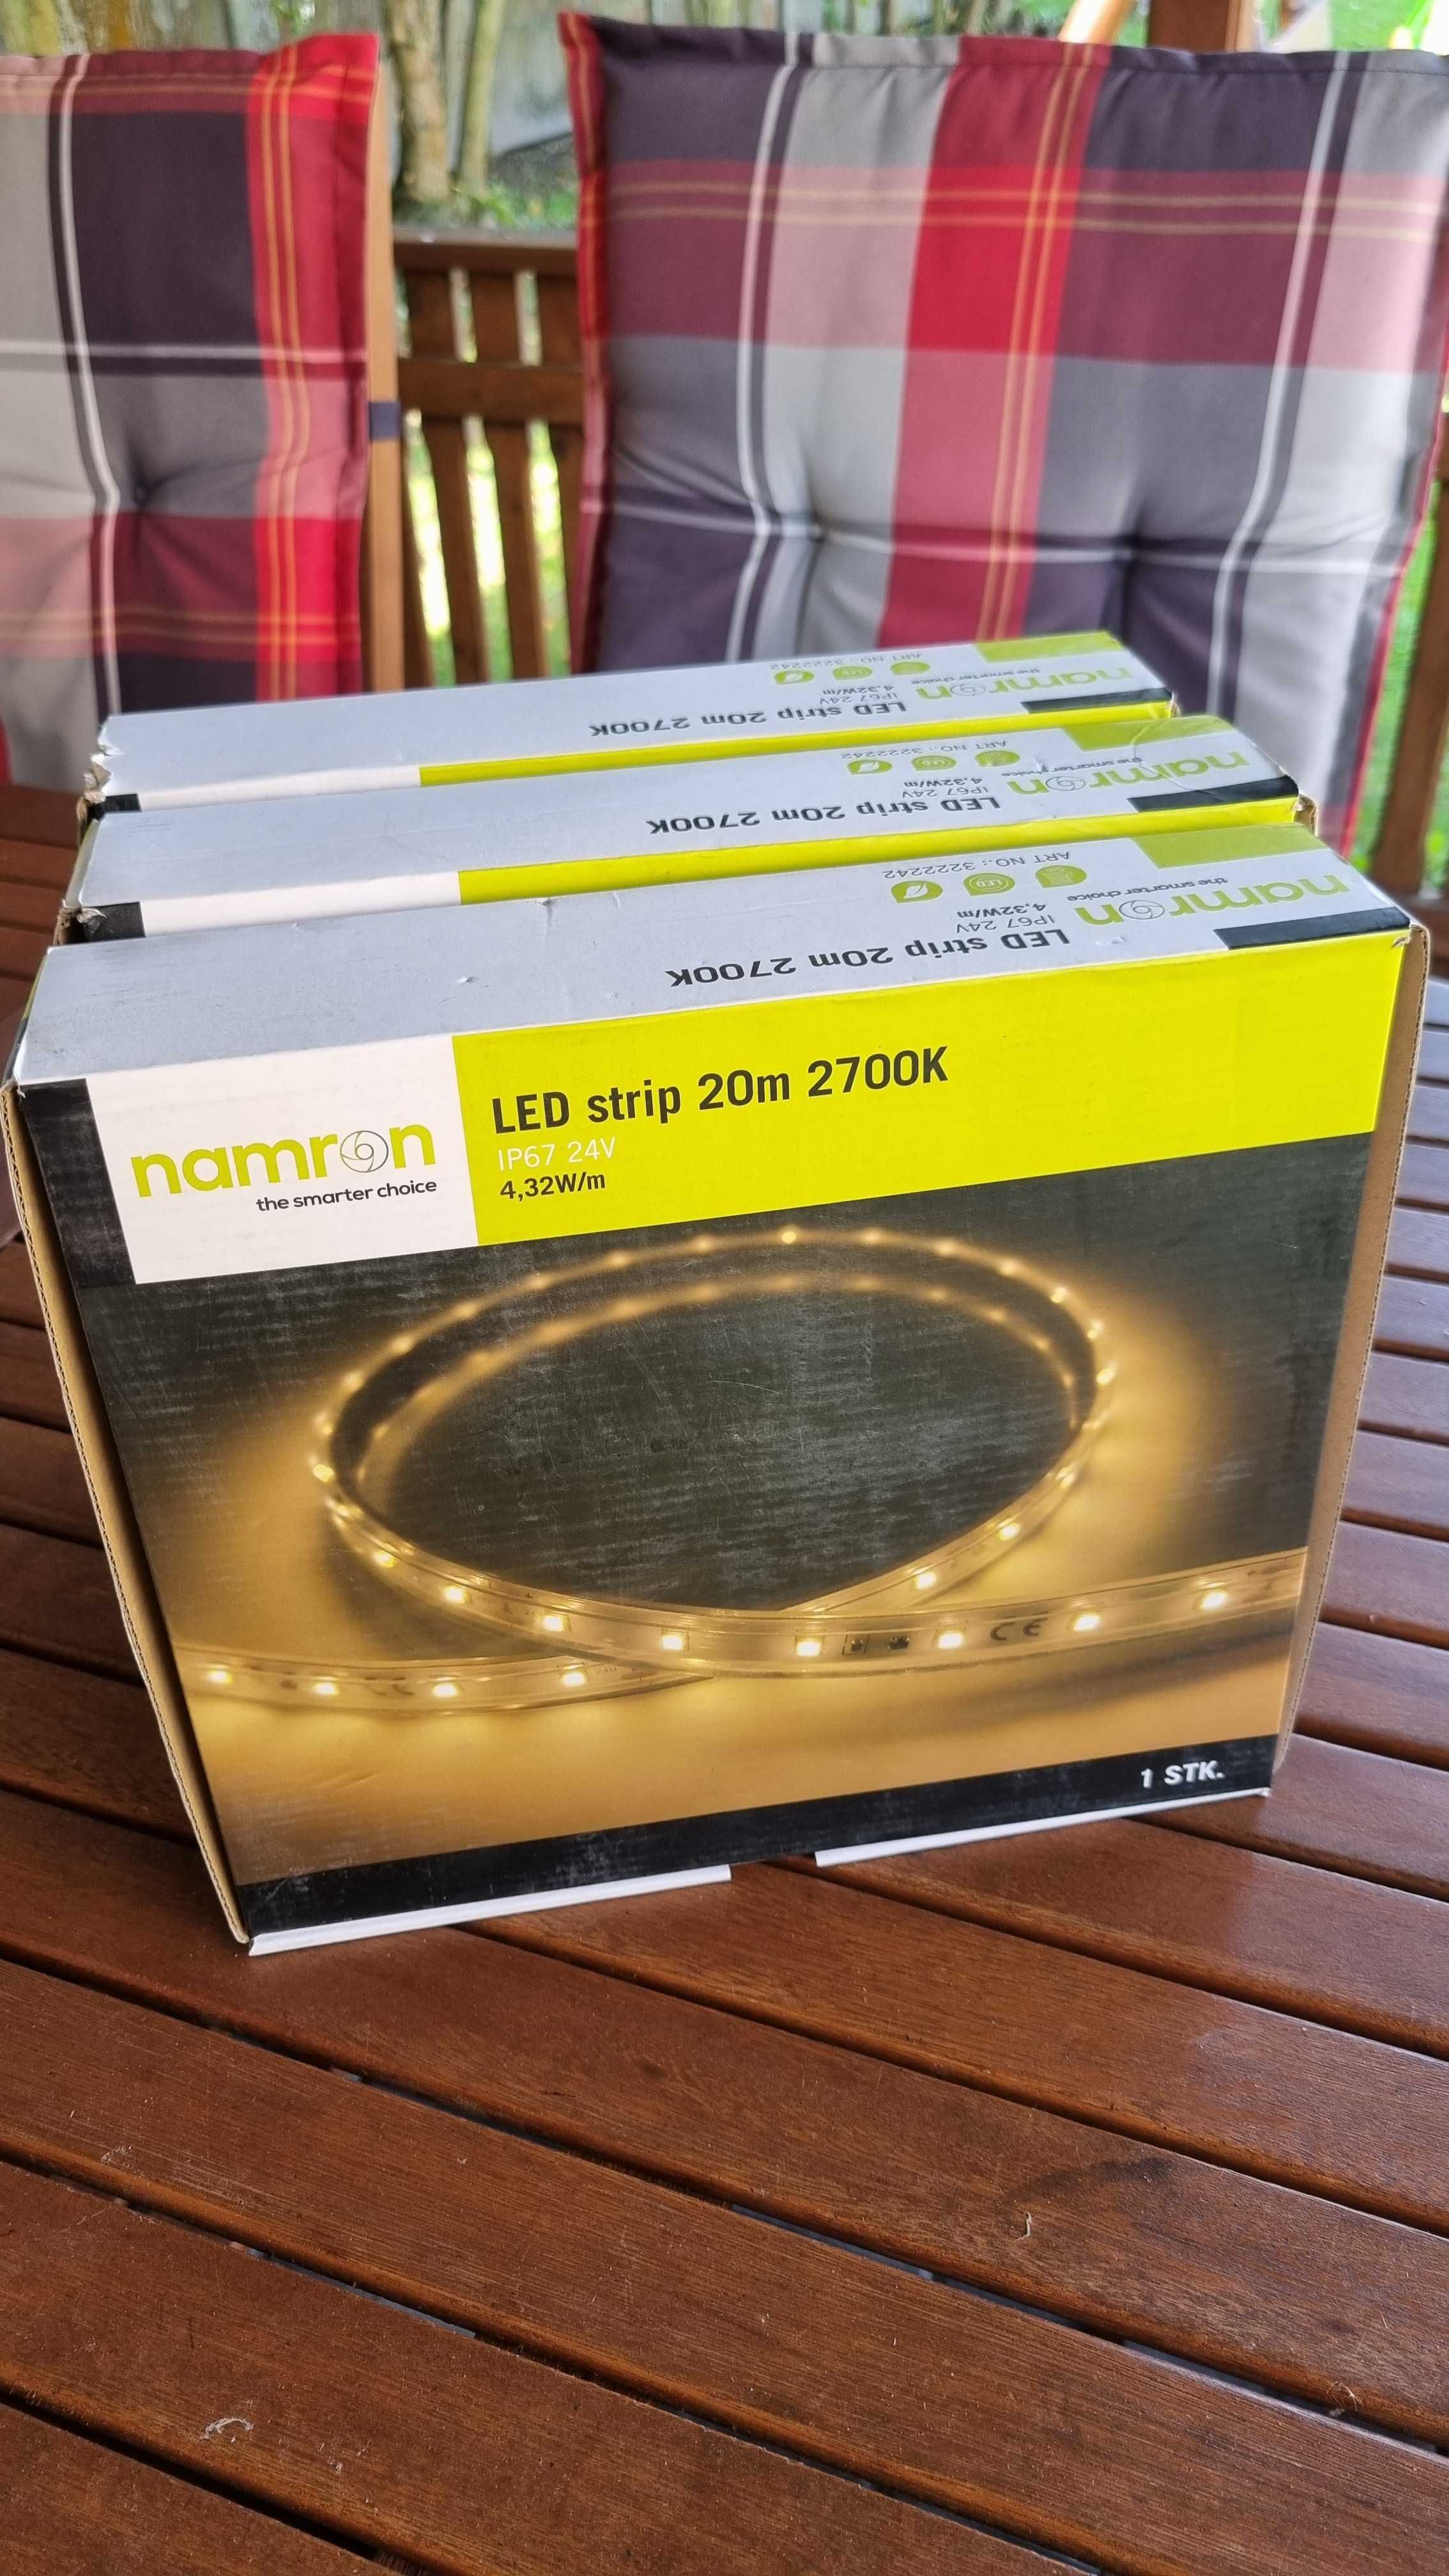 LED strip 20m 2700K